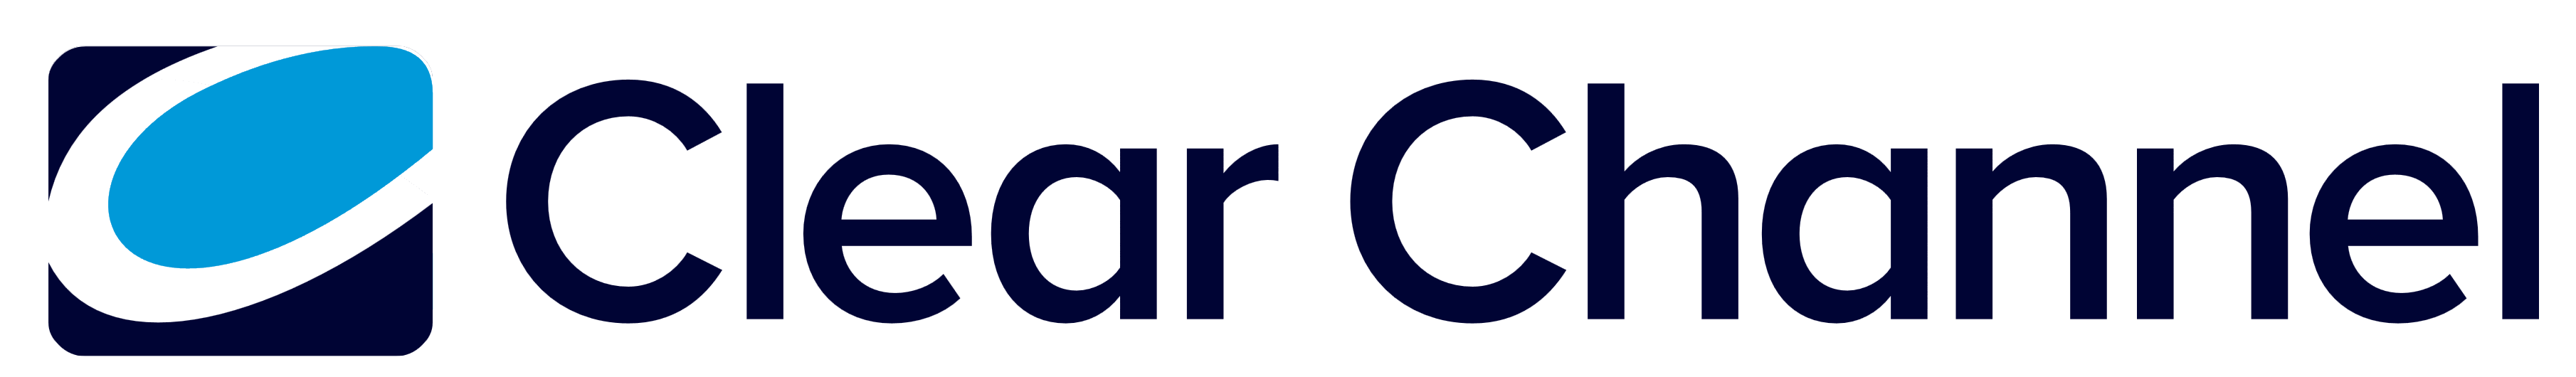 filemail logo